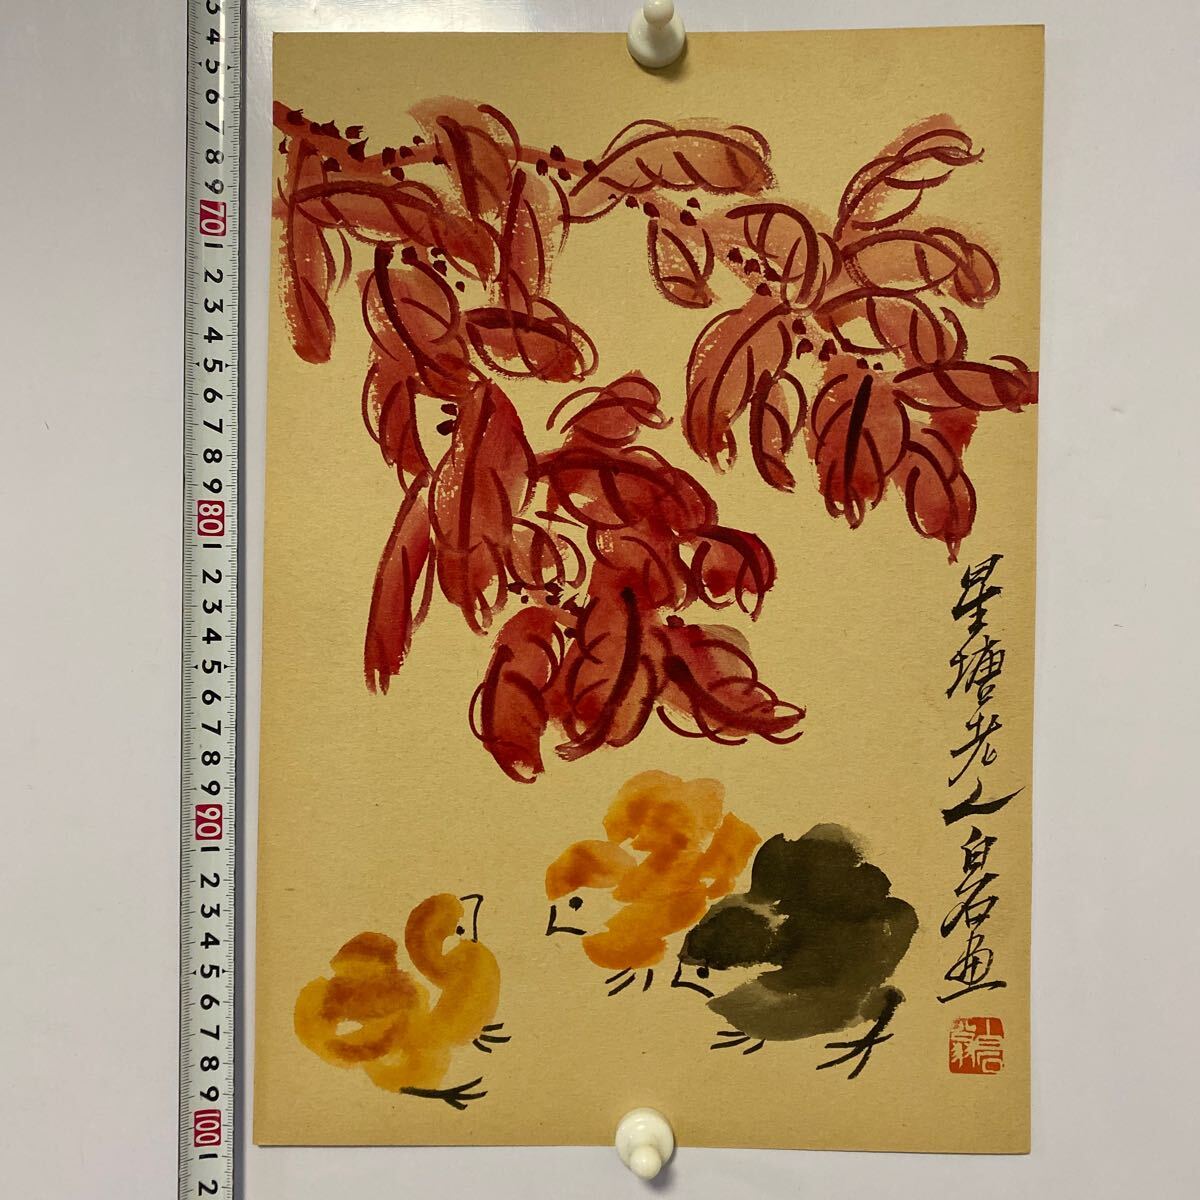 X12) Pintura china Qi Baishi Obras de Qi Baishi Flores y pájaros, ¡Un famoso pintor y calígrafo chino moderno y contemporáneo! Garantía usada!, obra de arte, cuadro, Pintura en tinta